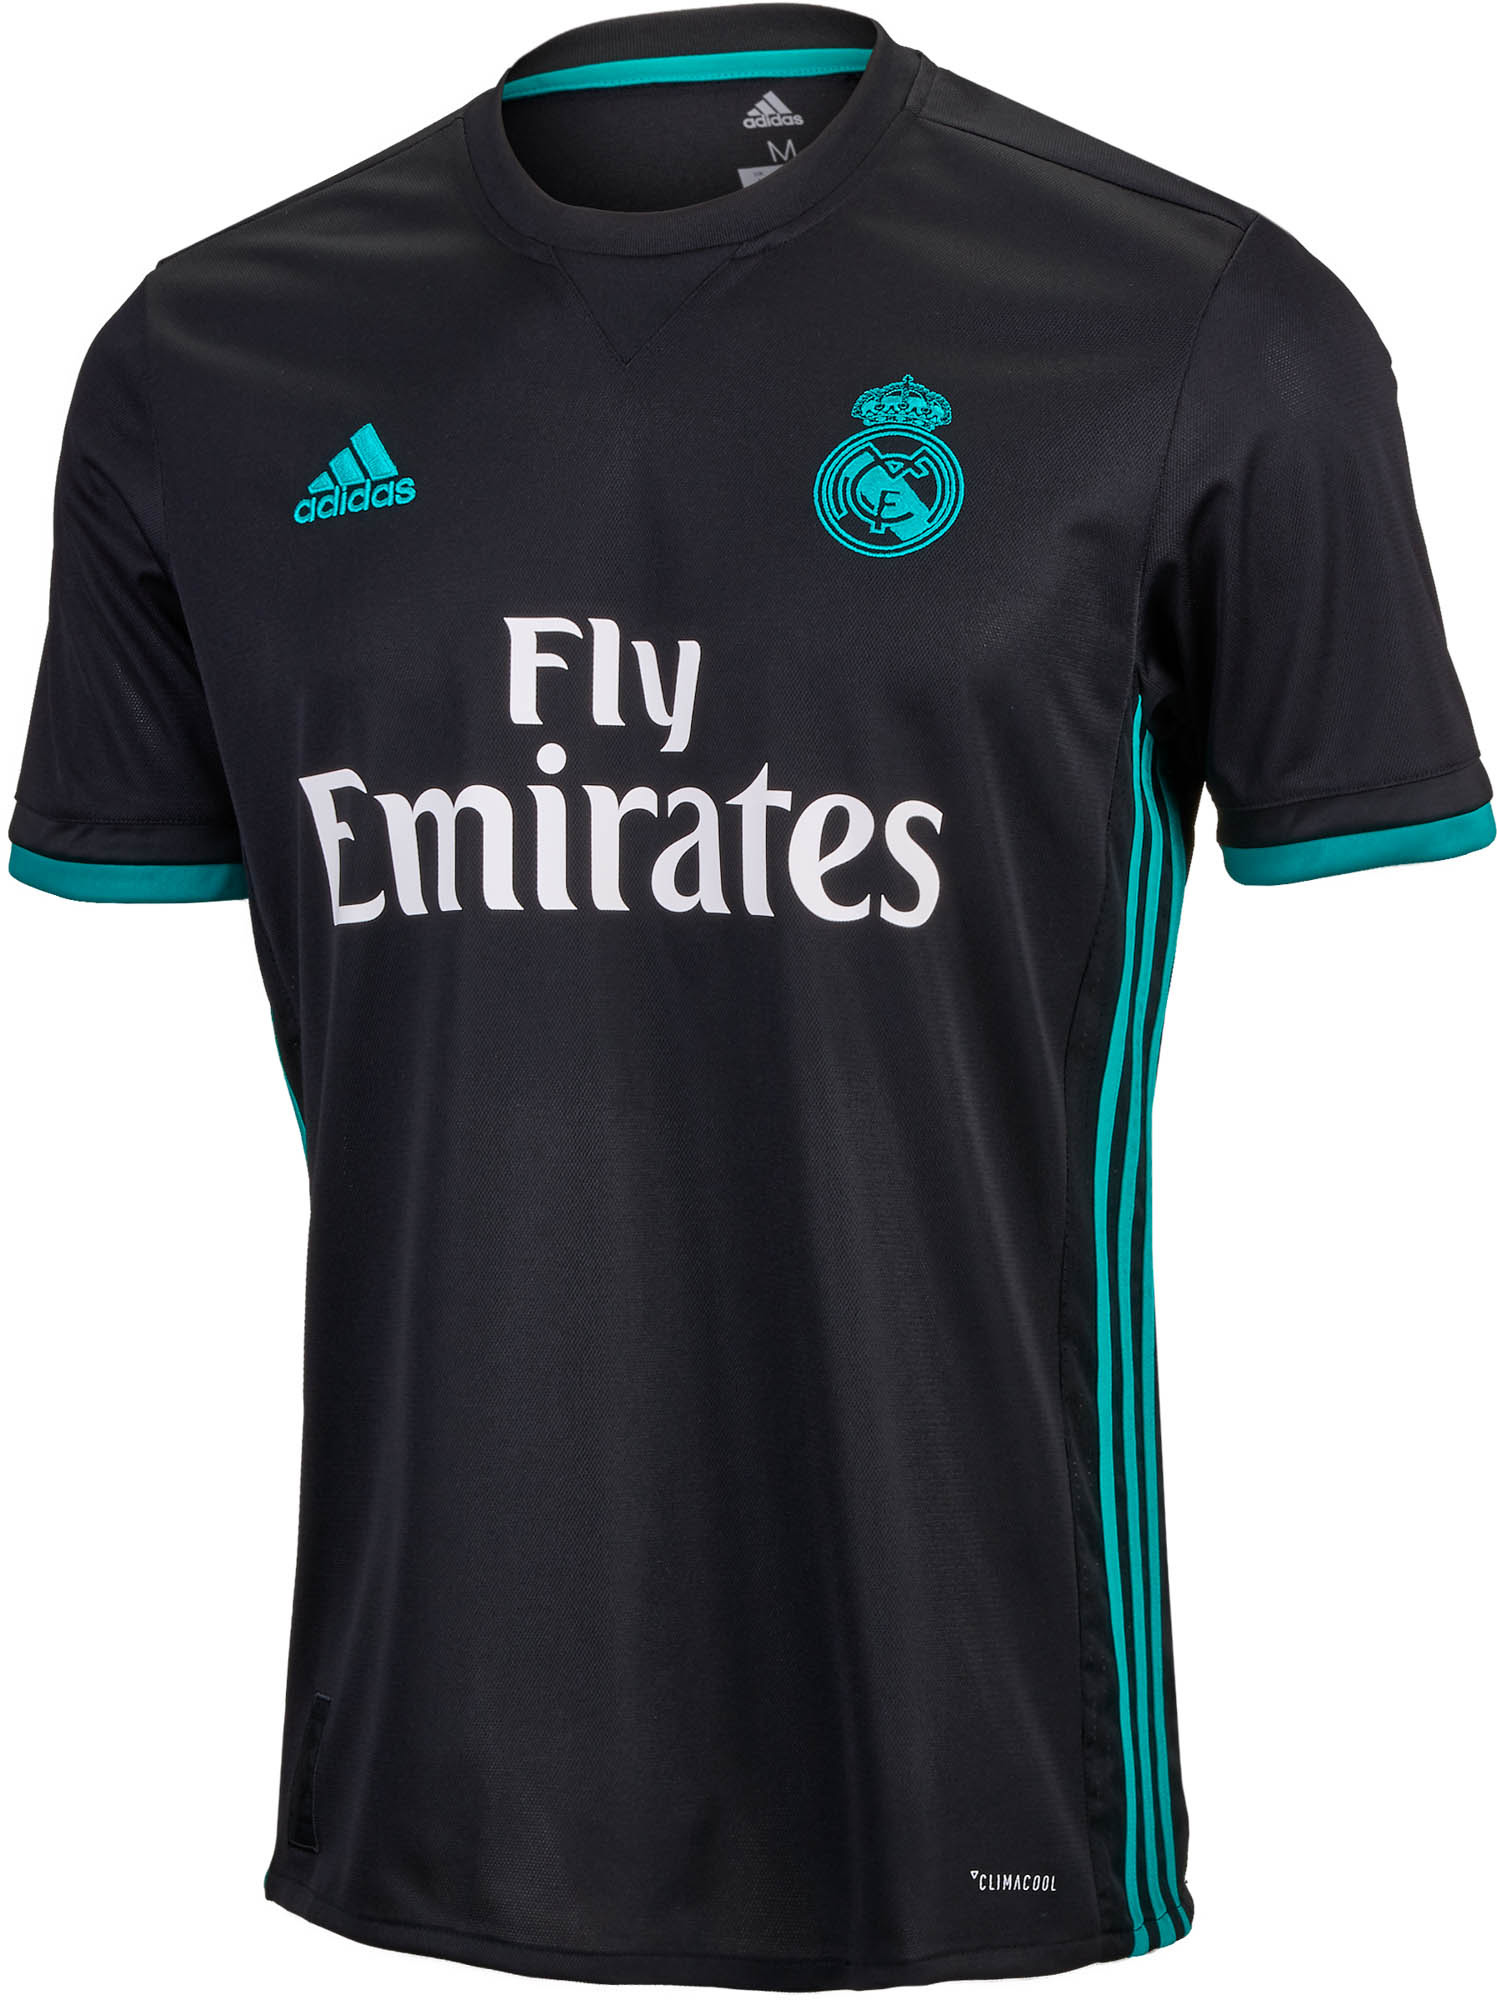 Origineel rekken geschiedenis adidas Real Madrid Away Jersey - 2017/18 Soccer Jerseys